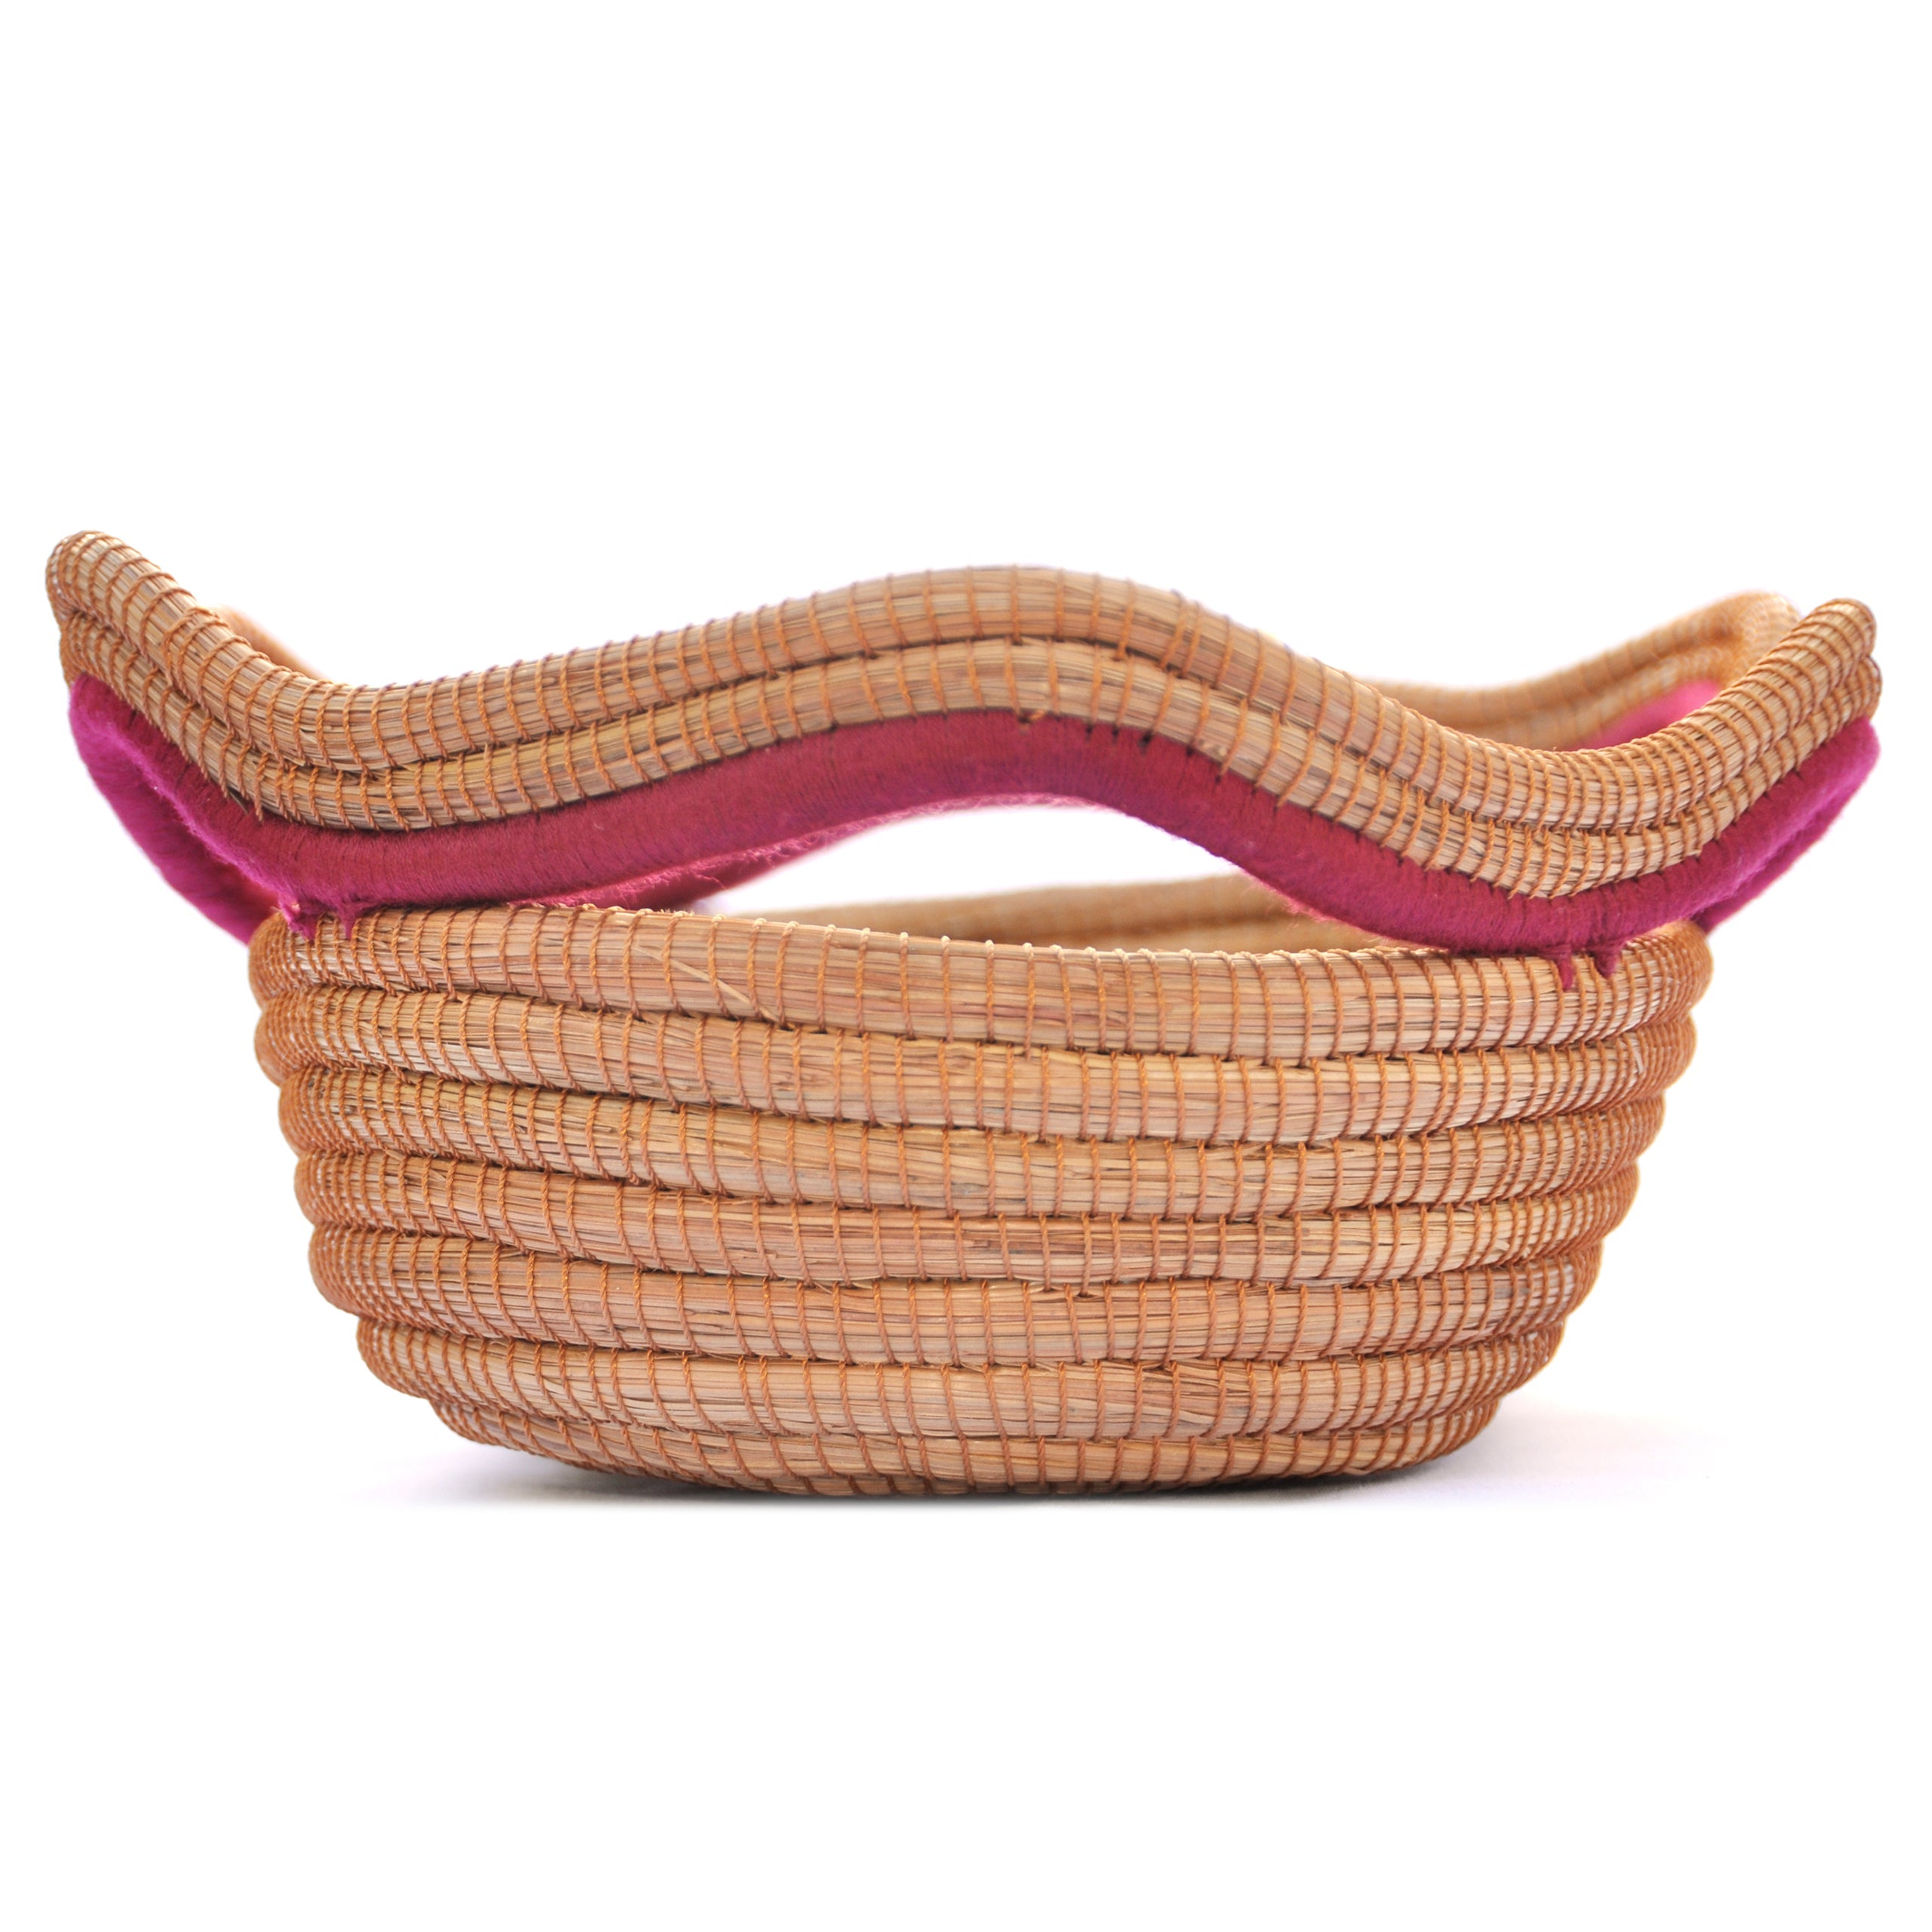 Oval Pine Needle Basket (Set of 3)